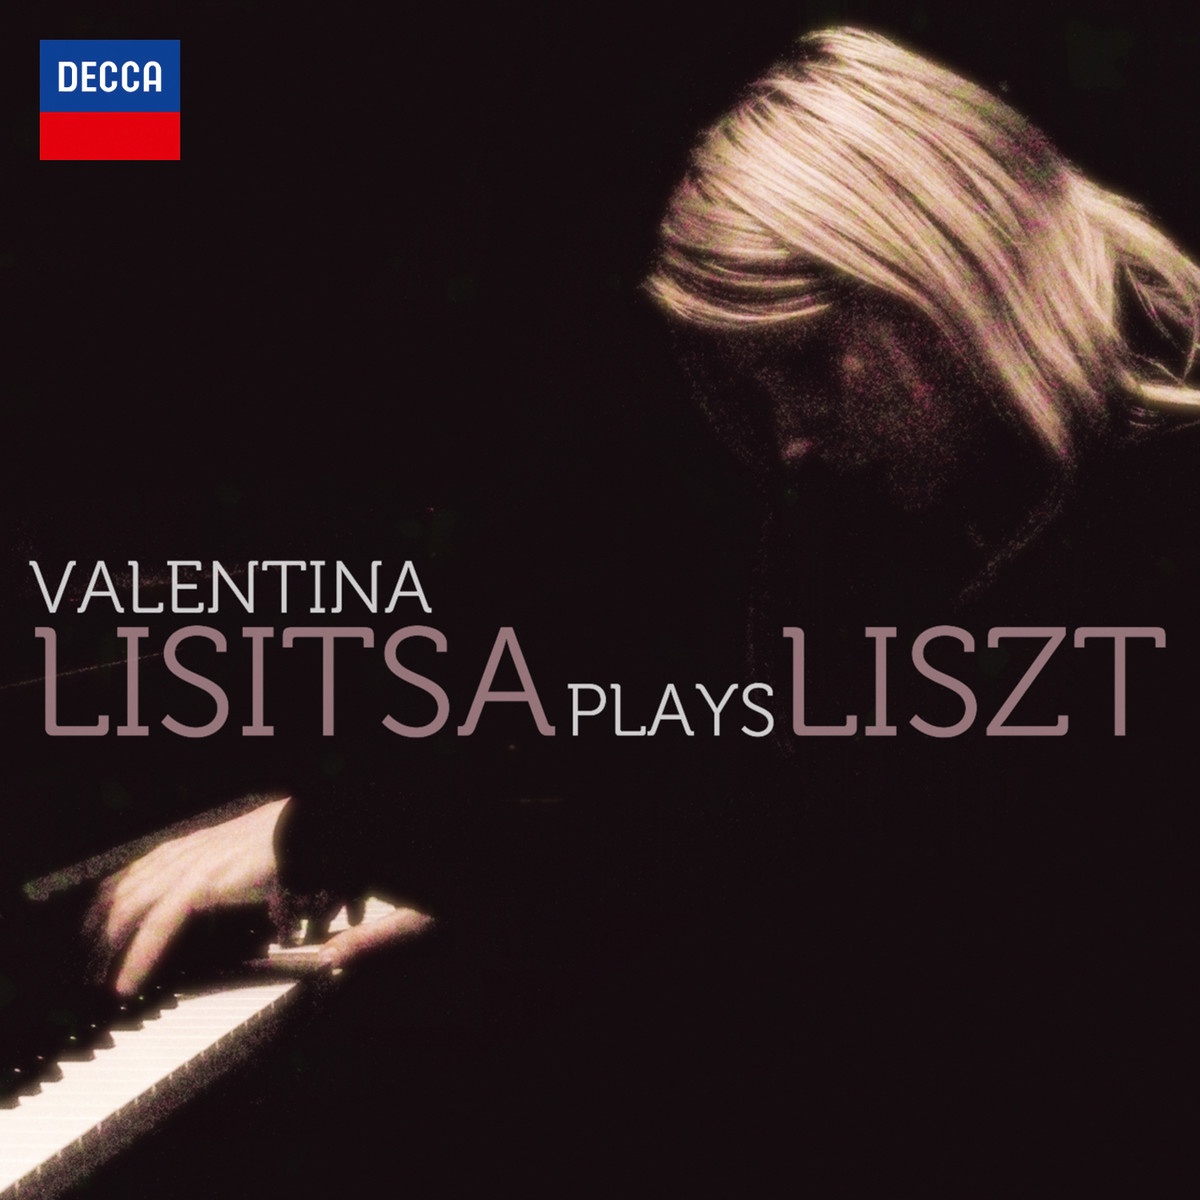 Liszt: Ellens Gesang III Ave Maria, S558 no. 12 after Schubert' s D839